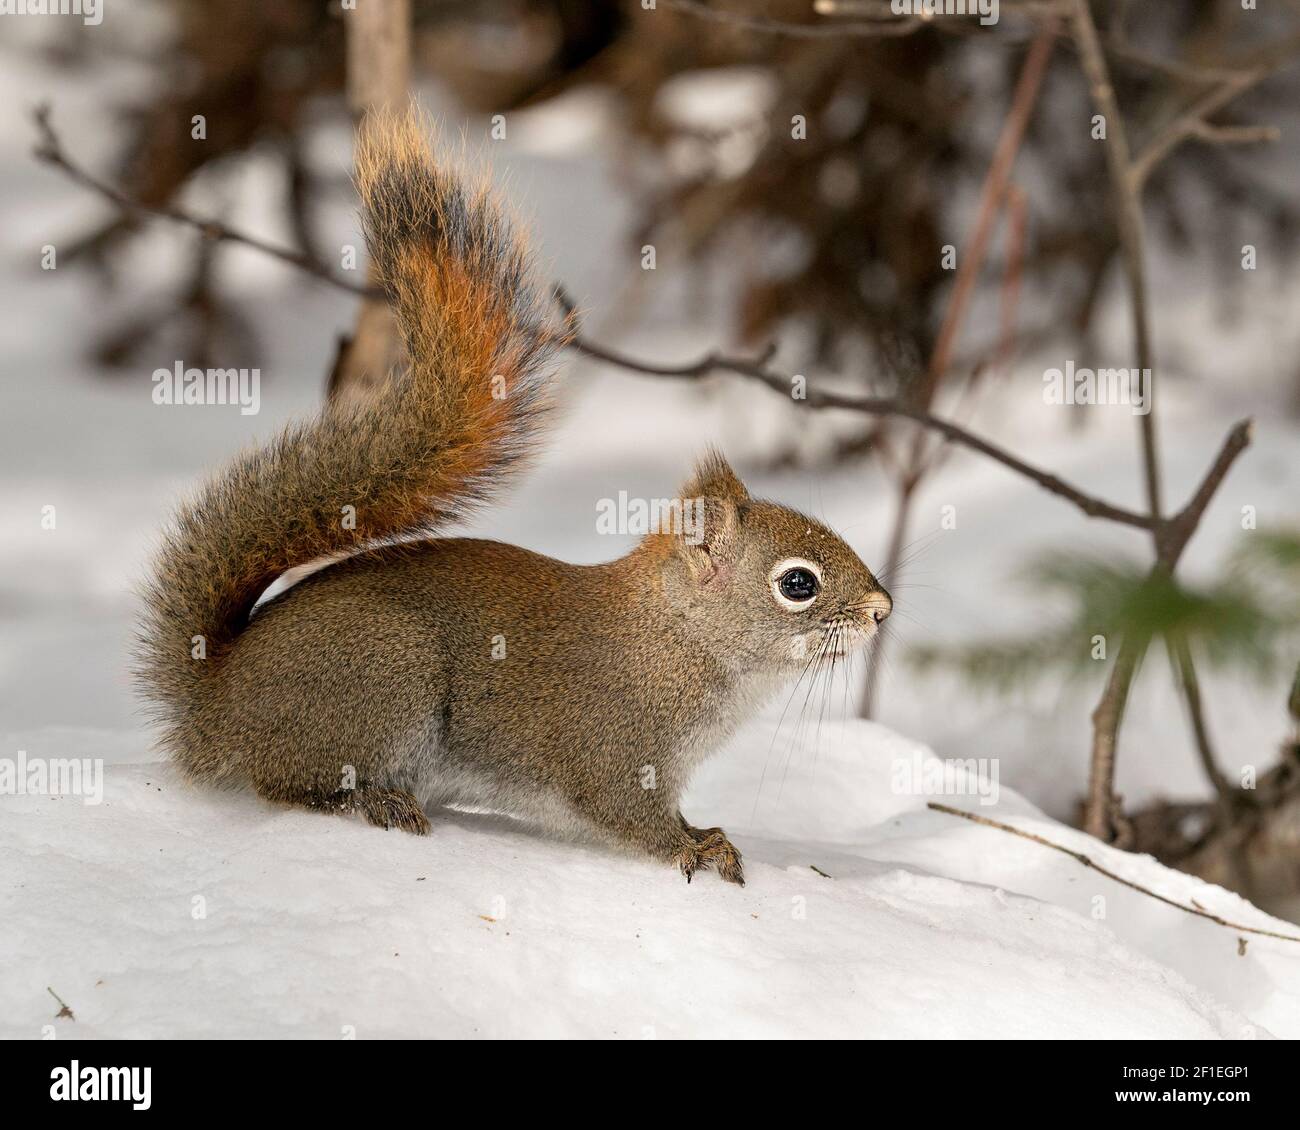 Eichhörnchen Nahaufnahme Profil Seitenansicht im Wald, im Schnee stehend mit unscharfen Hintergrund zeigt seine braunen Fell, in seinem Lebensraum und Umgebung. Stockfoto